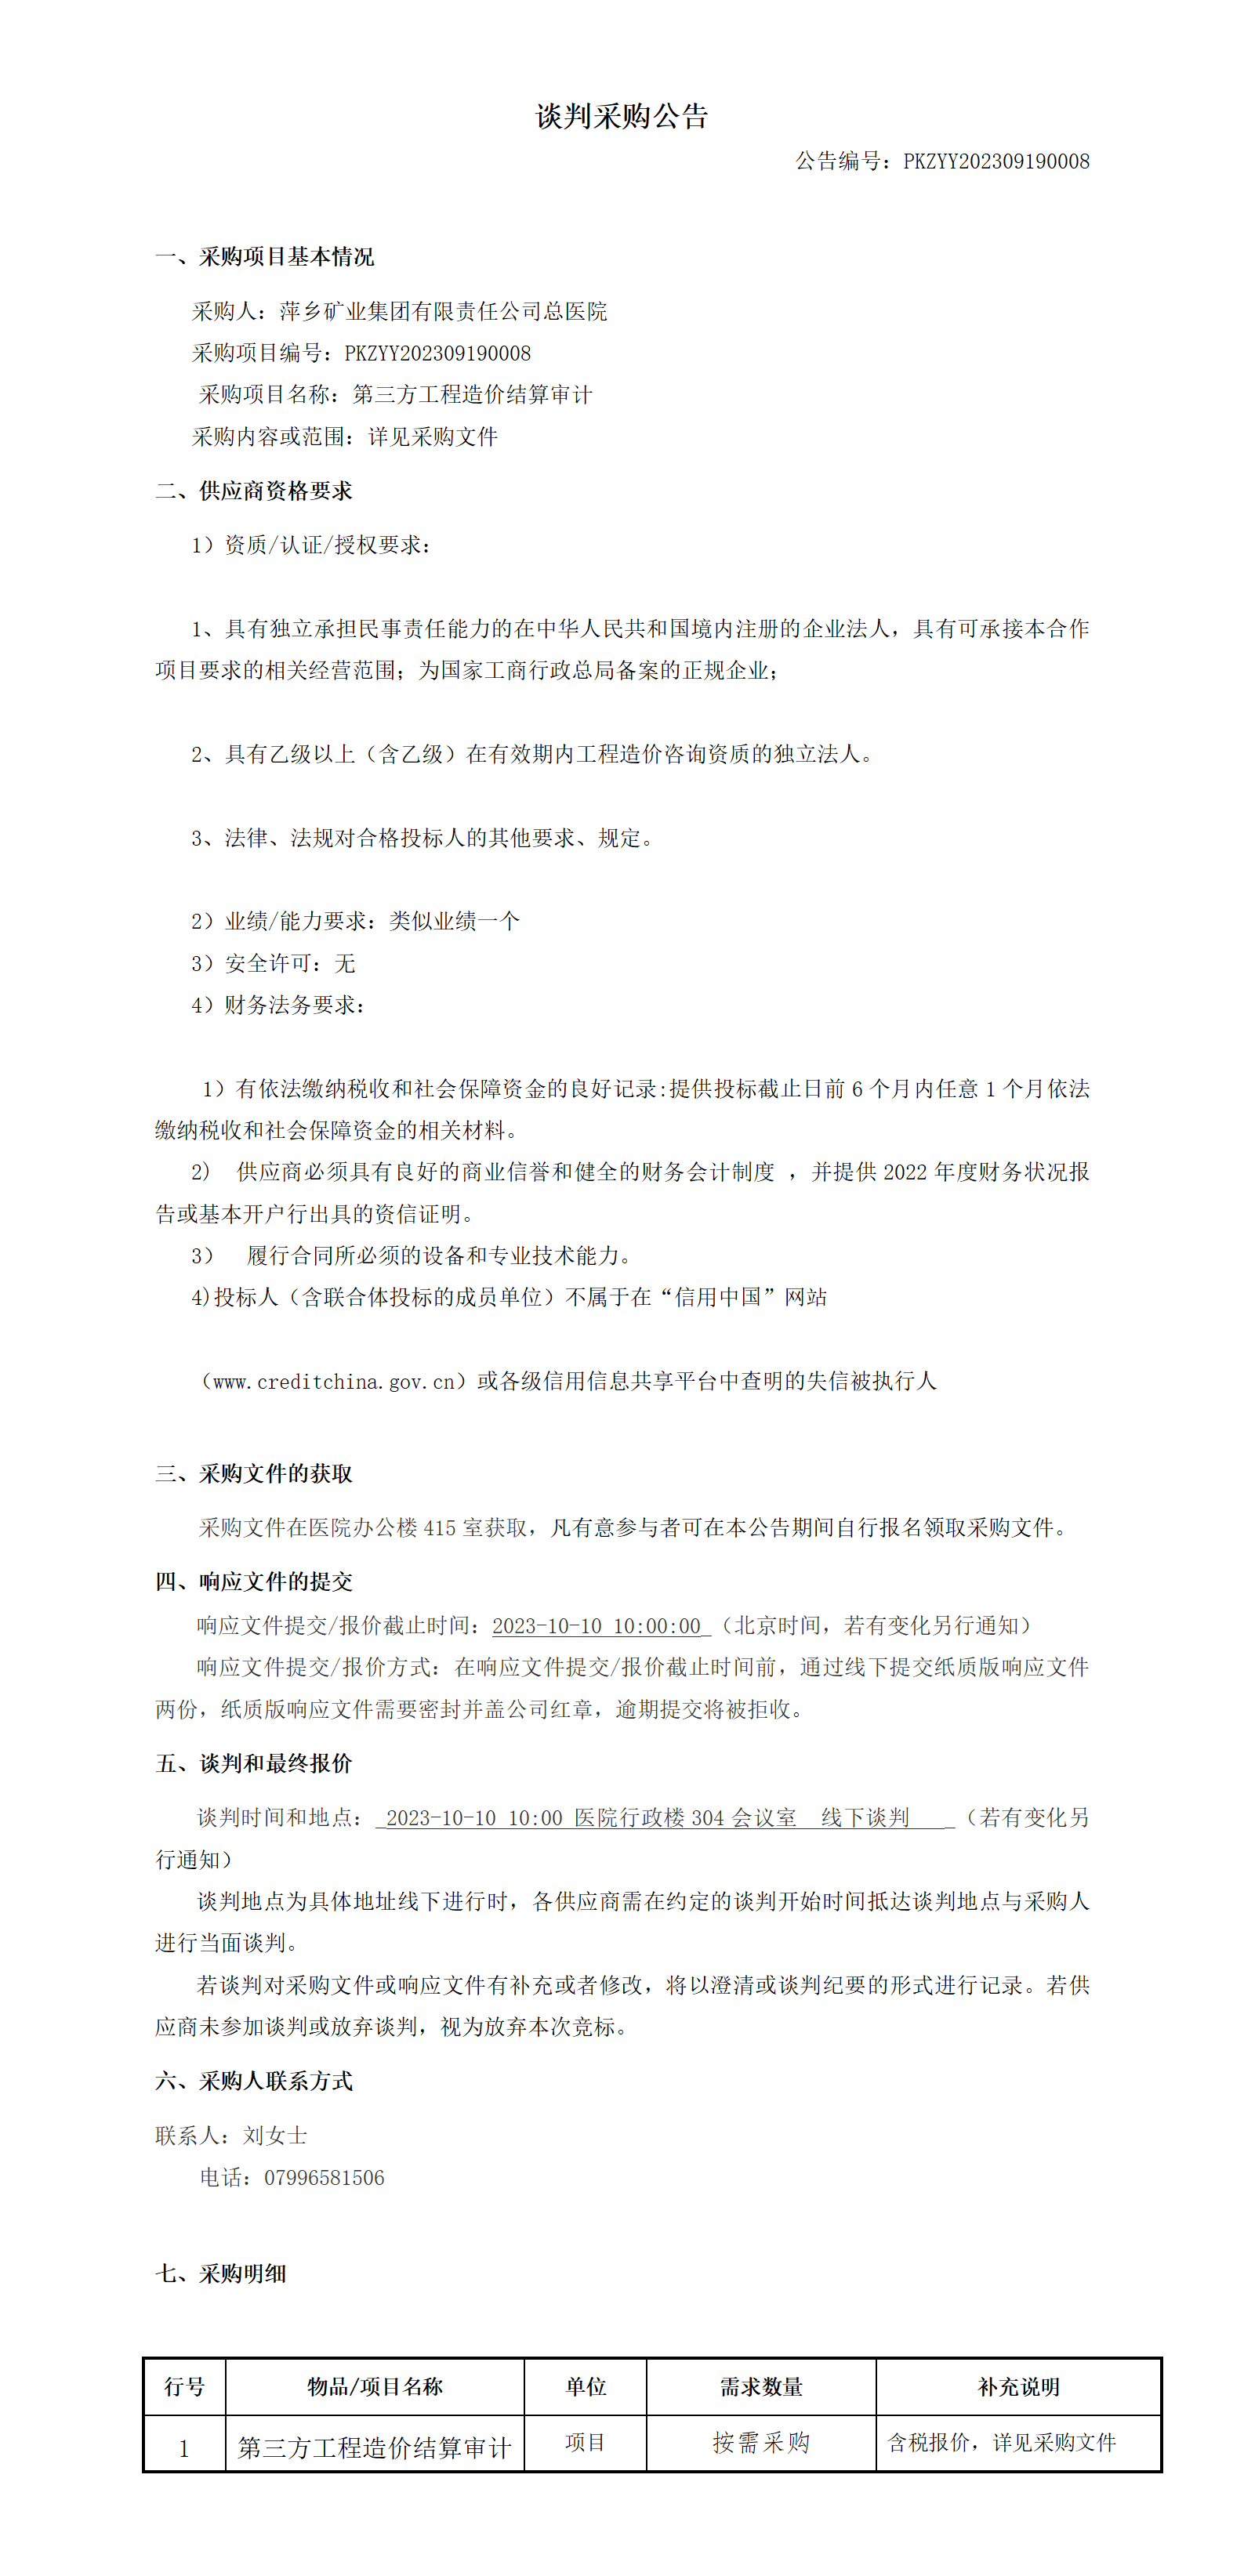 萍矿总医院第三方工程造价结算审计谈判采购公告(1)(1)_01